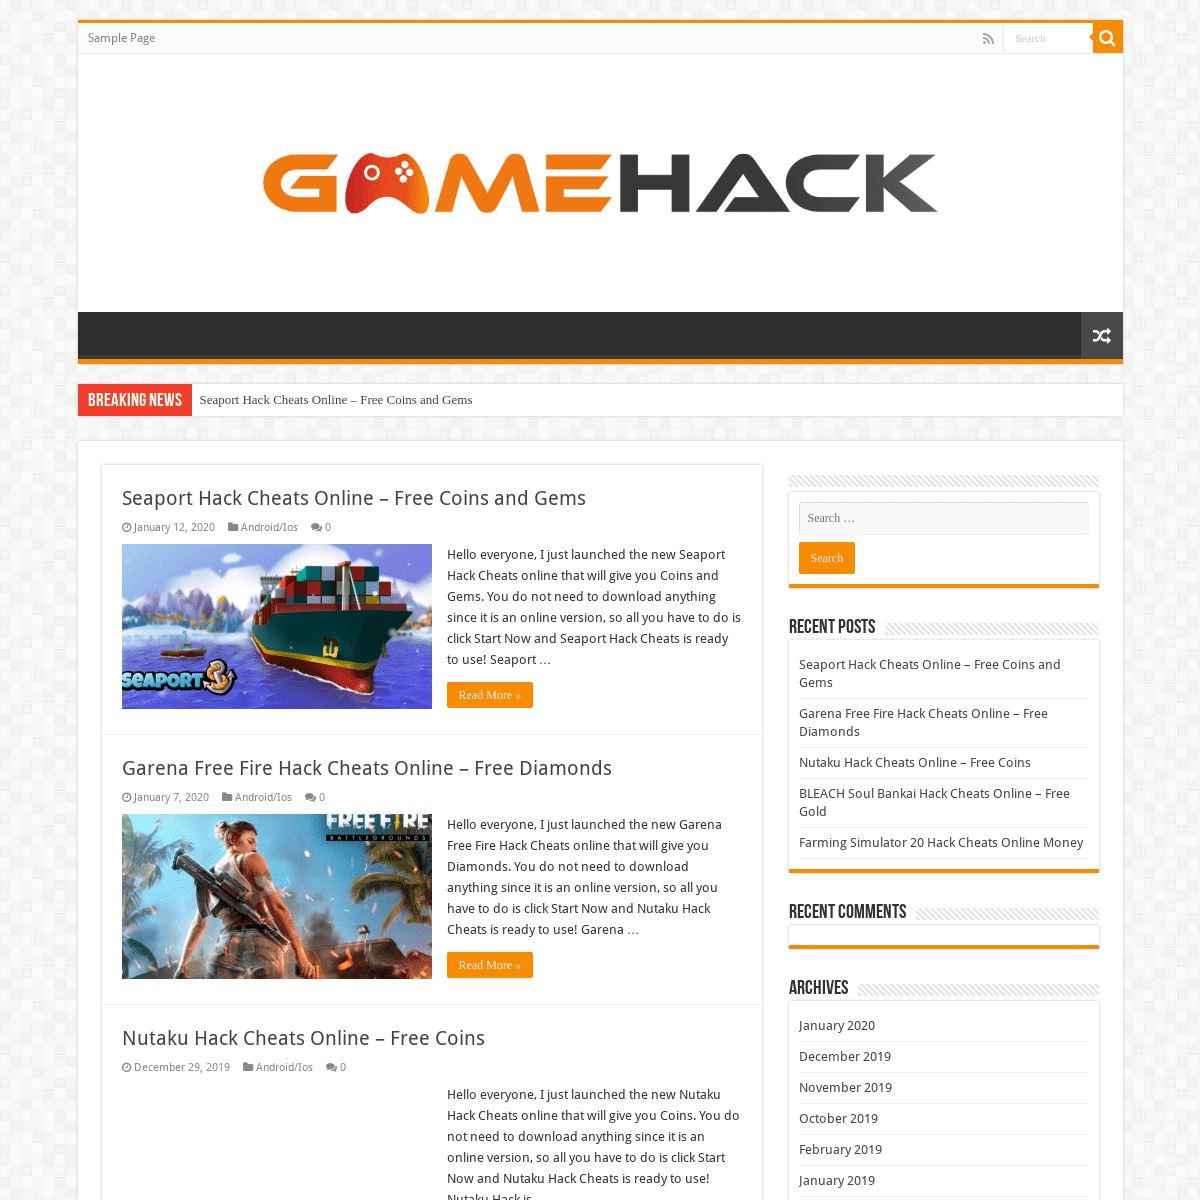 A complete backup of hacksgamesk.com